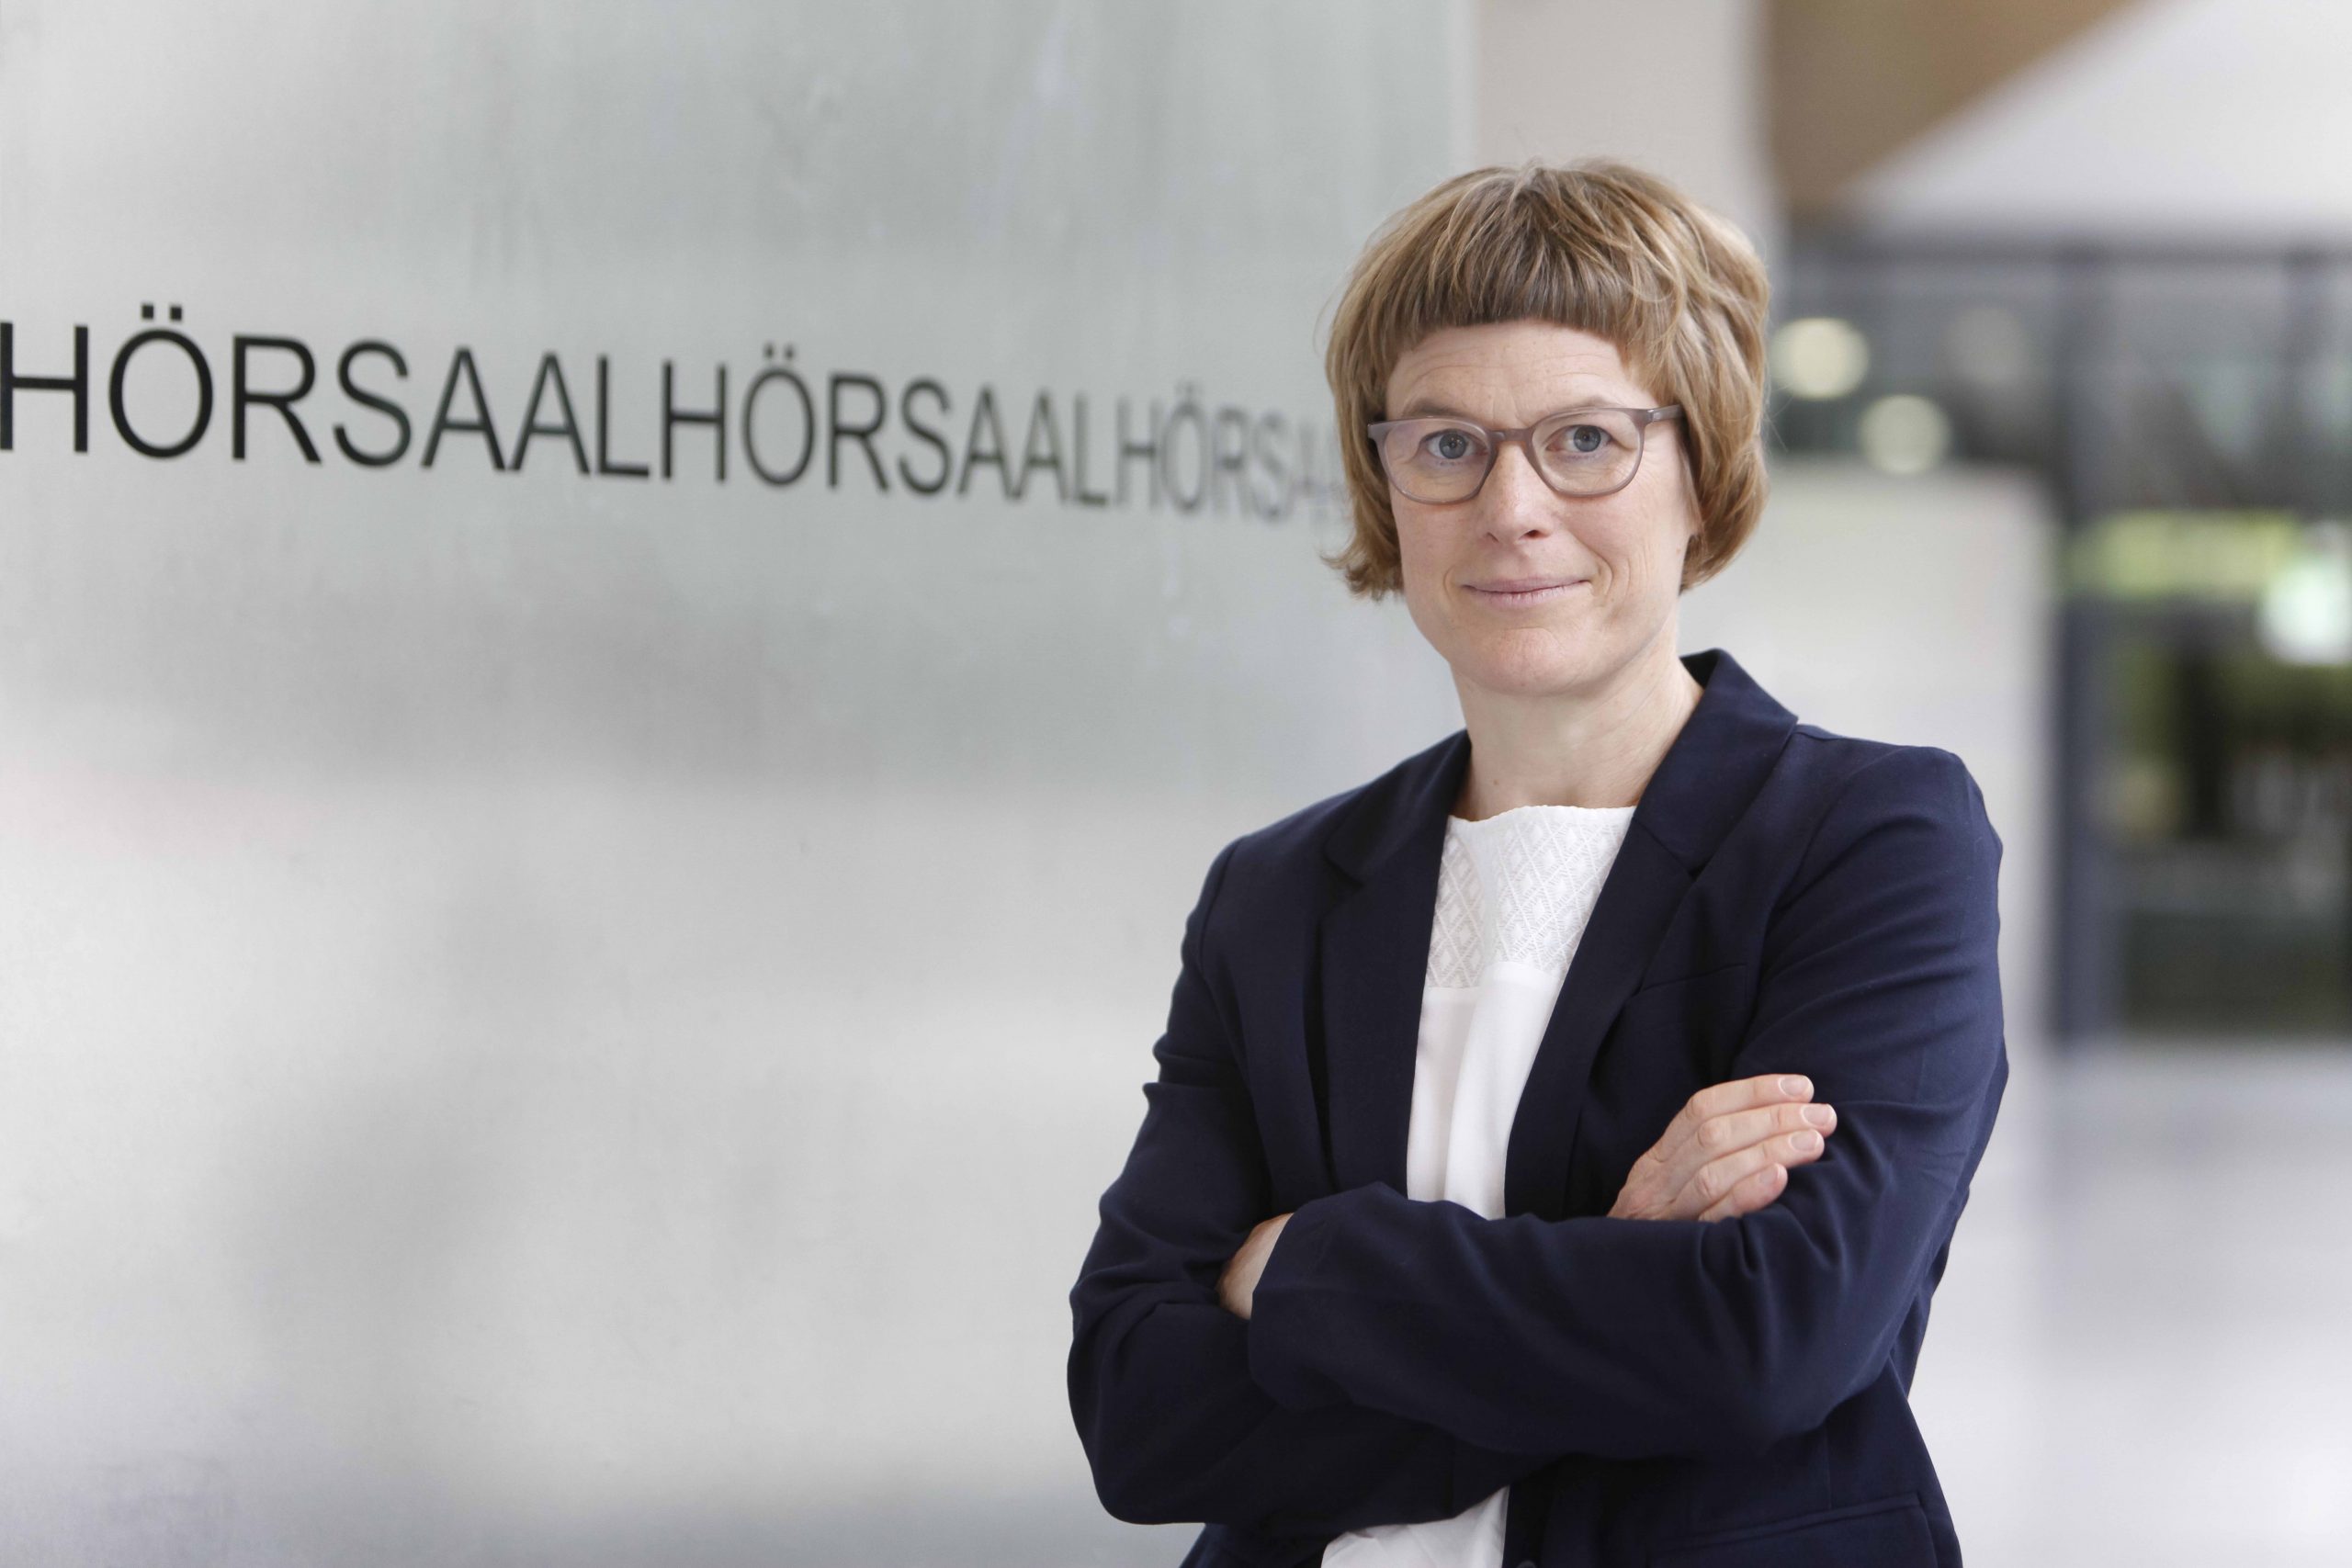 Wirtschaftsweisin Professorin Dr. Veronika Grimm zu den Auswirkungen der Corona-Krise auf die Wirtschaft